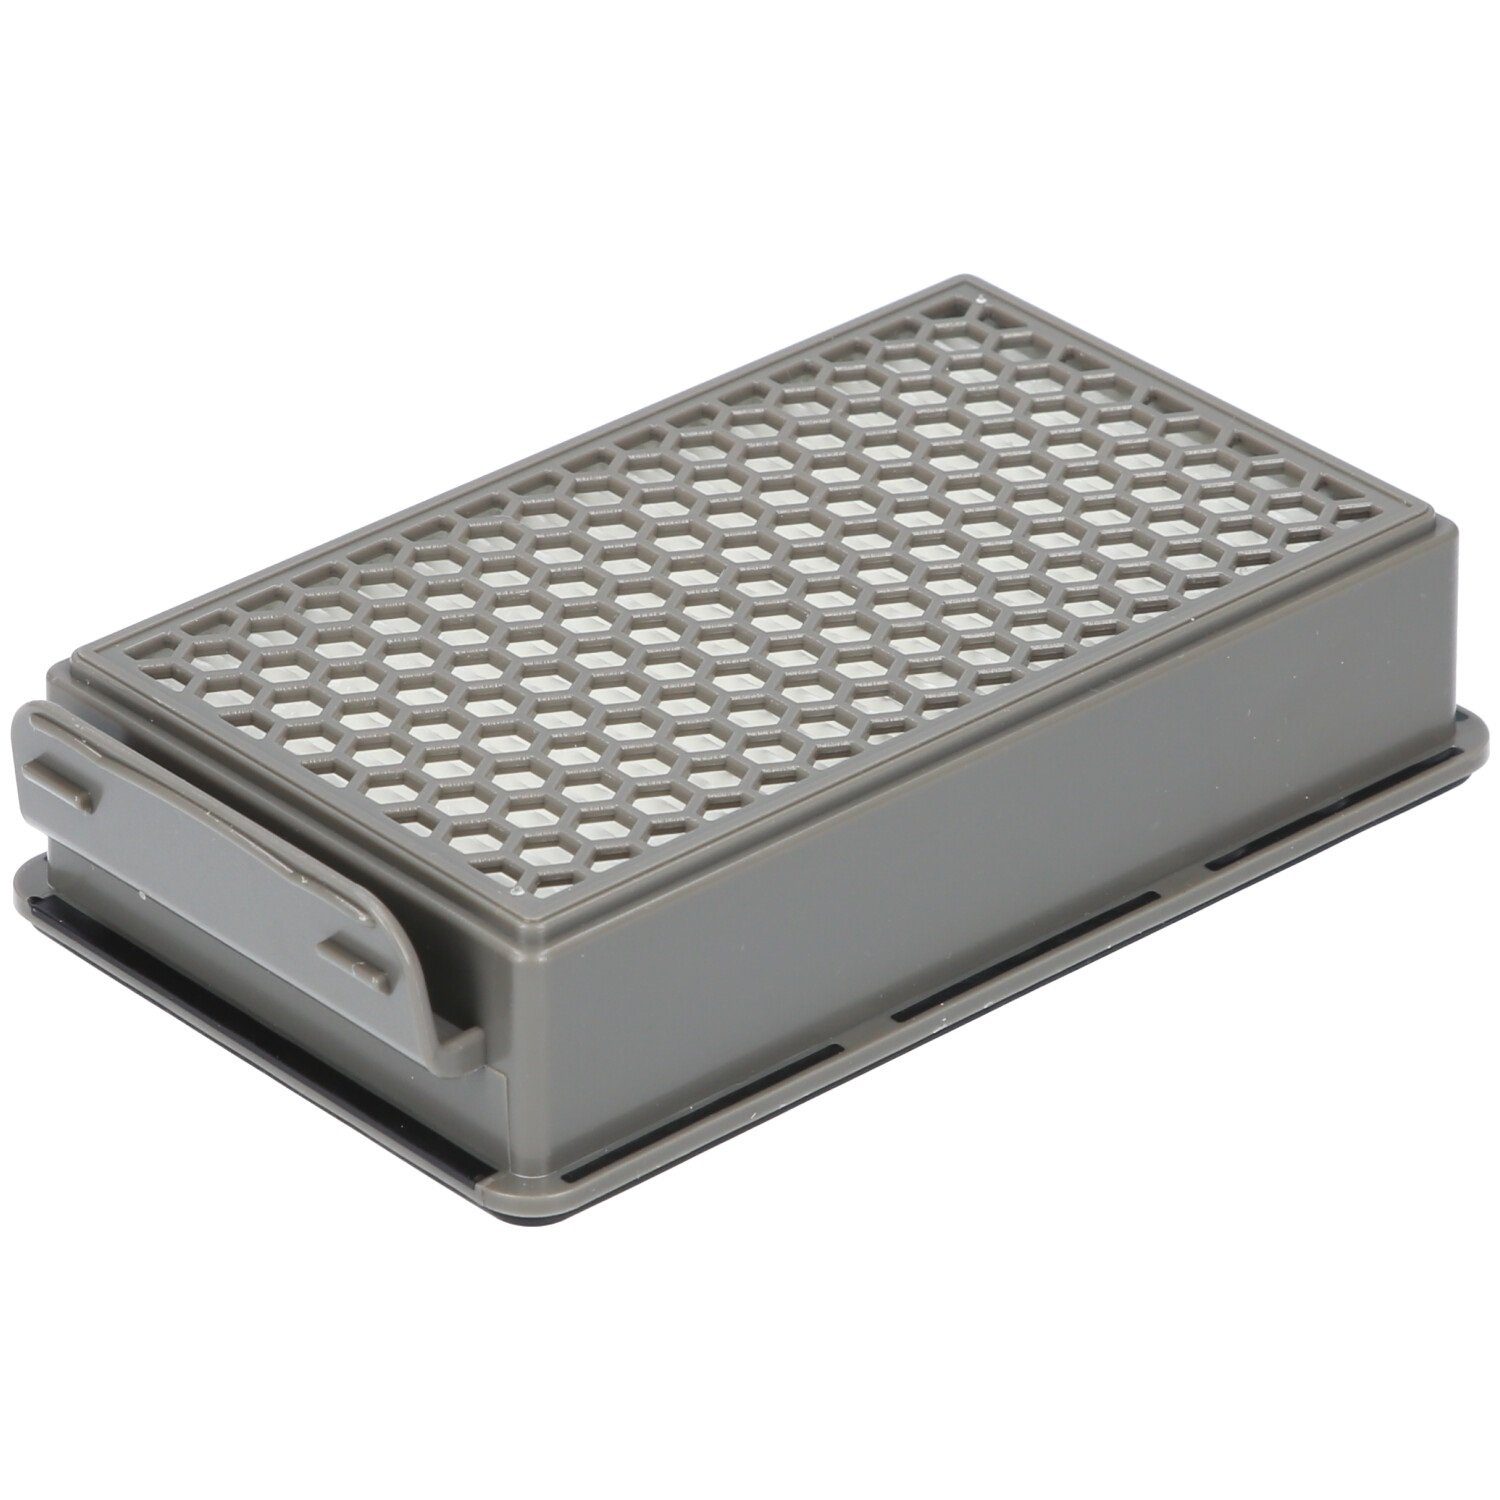 McFilter Filter-Set geeignet für Samurai Rundfilter, Filterkassette, SG3751WA ZR005901 Staubsauger, 2x Alternative 2x für